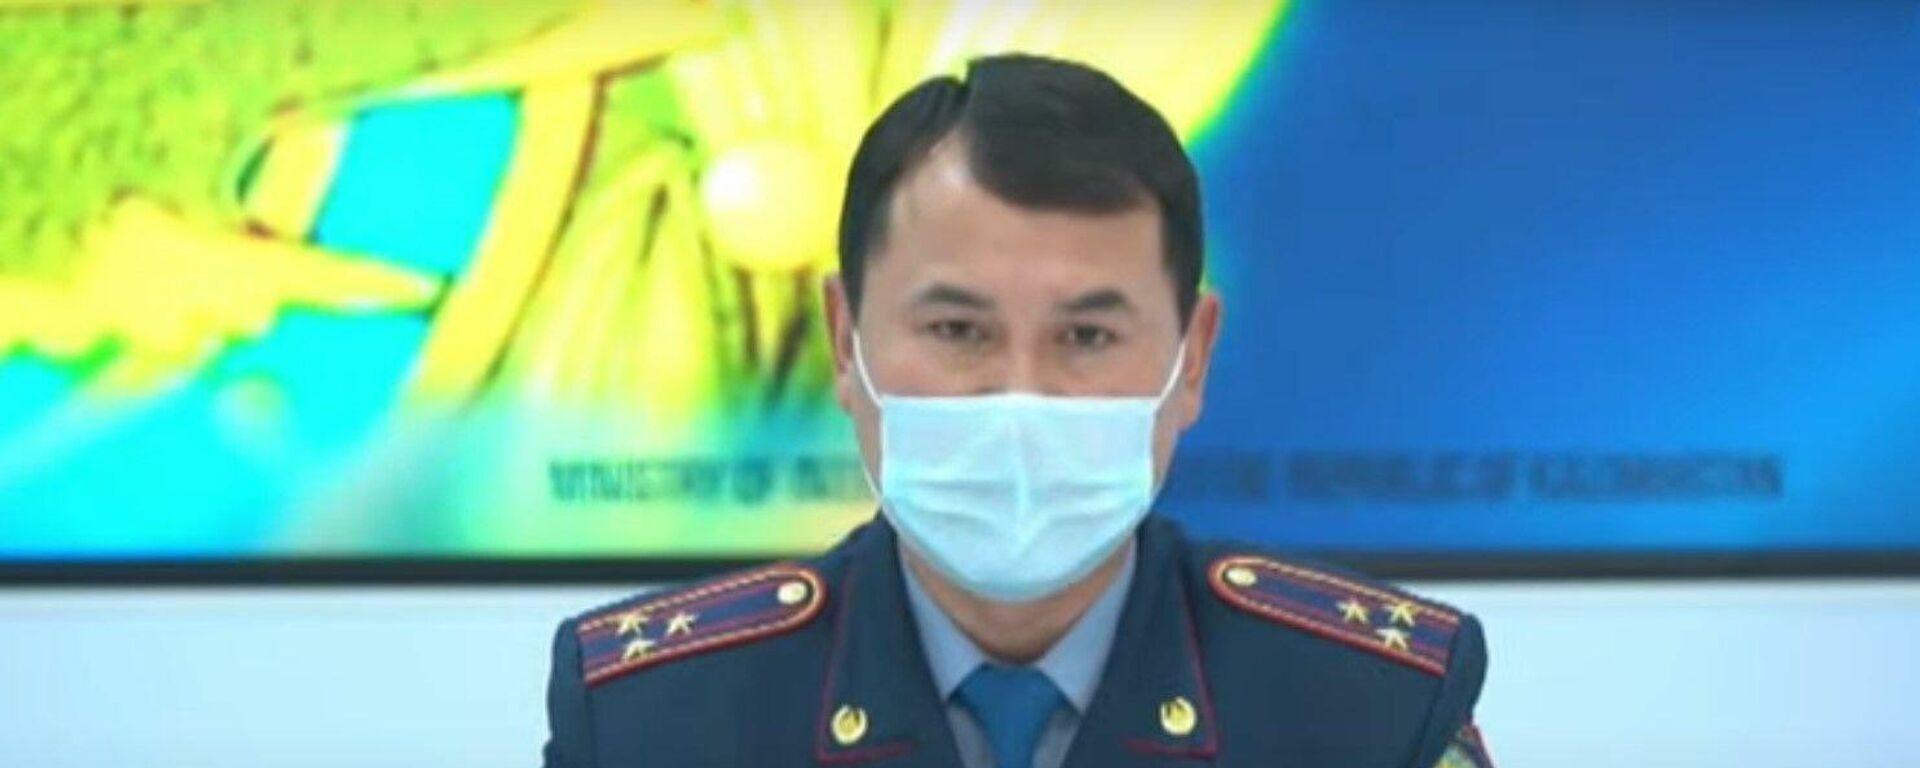 В Казахстане смягчат наказание за потребление наркотиков – МВД - Sputnik Казахстан, 1920, 28.03.2022